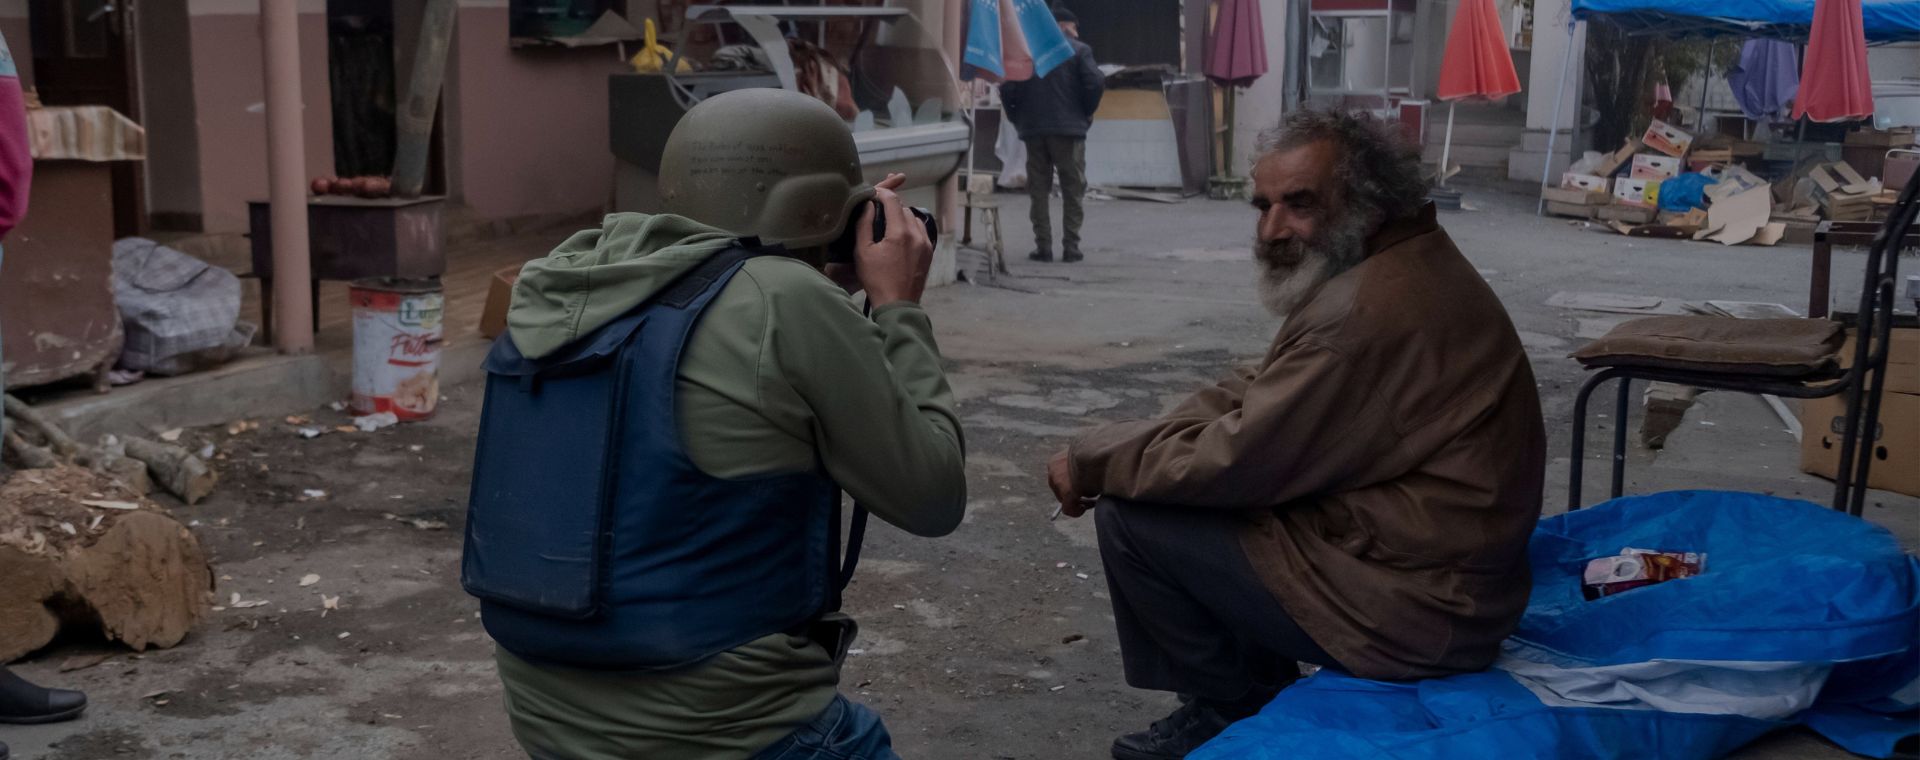 Un photographe portant un gilet pare-balles et un casque de protection prend en photo un homme âgé local lors d'un conflit militaire entre les forces arméniennes et azerbaïdjanaises sur le marché central de Stepanakert.